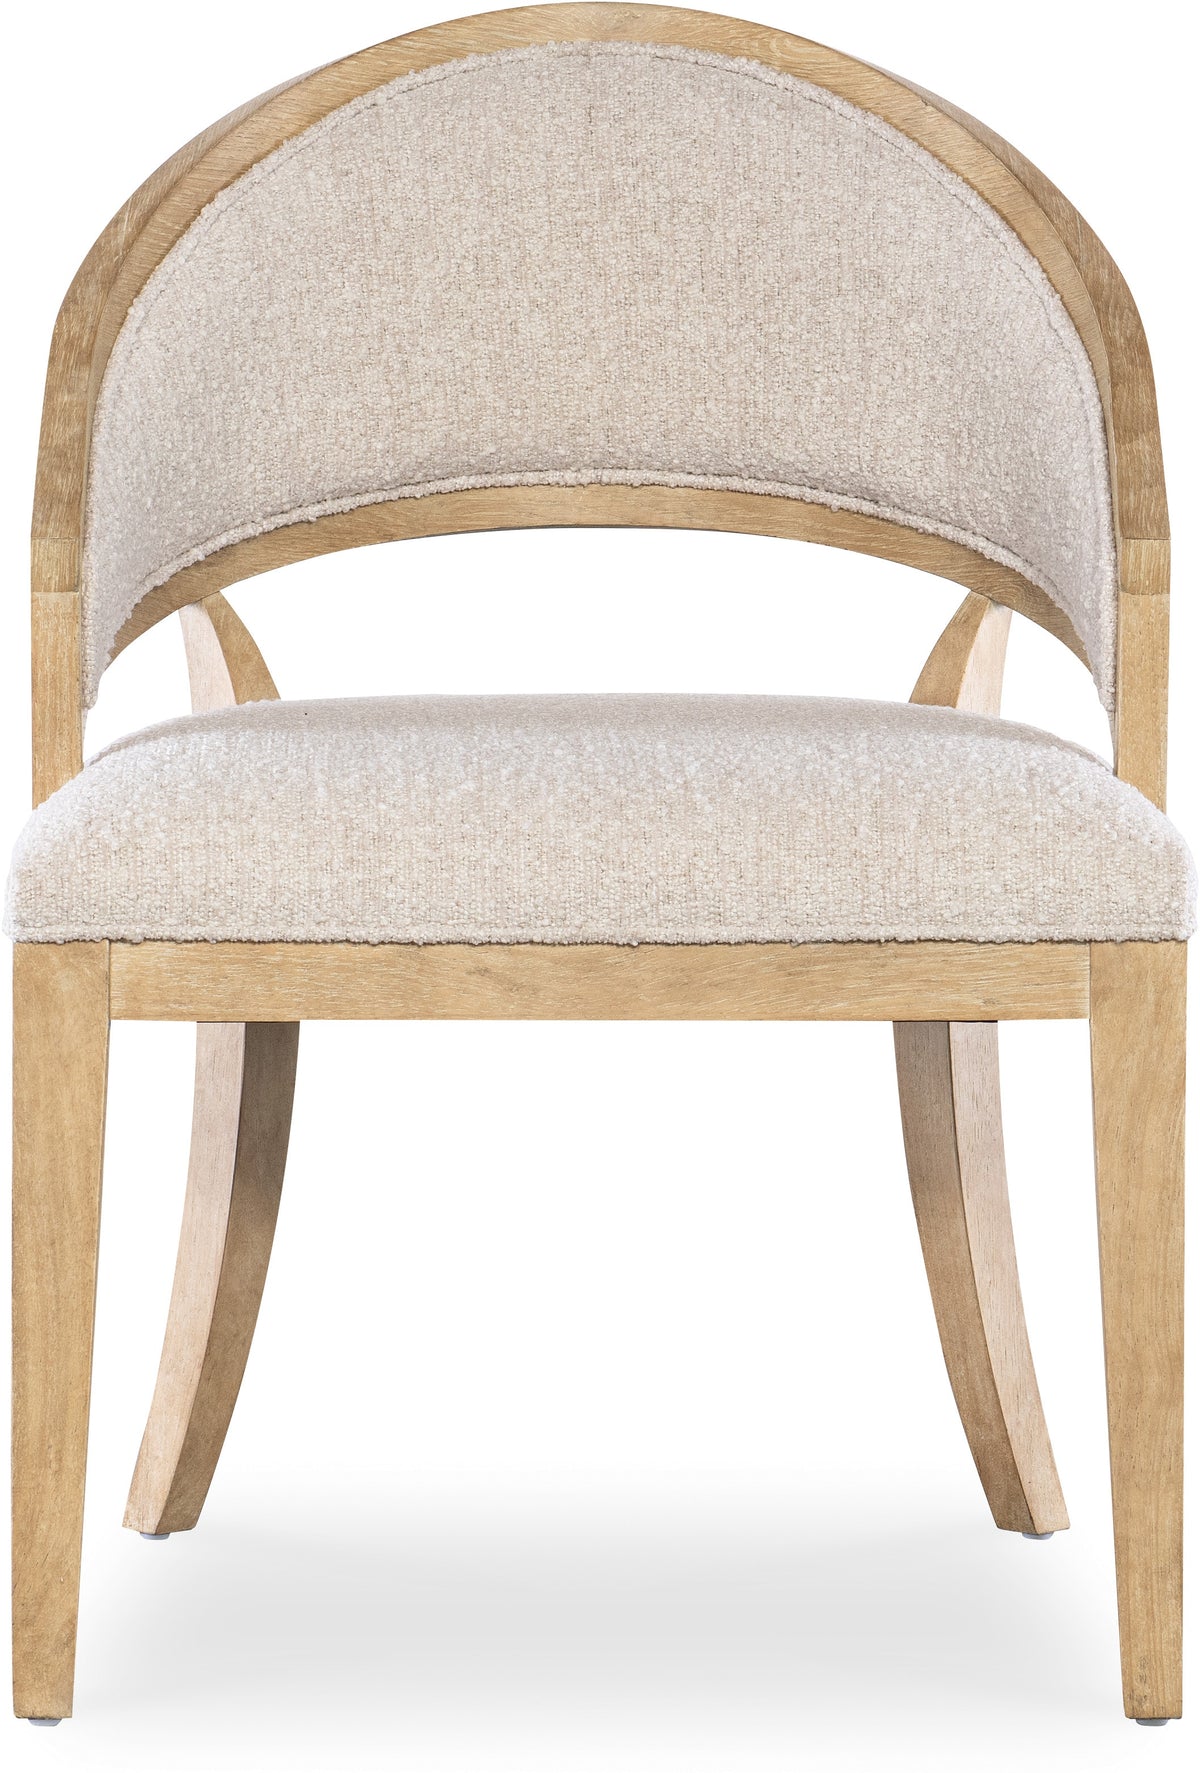 Nolita Natural & Cream Cane Barrel Back Chair (Set of 2)